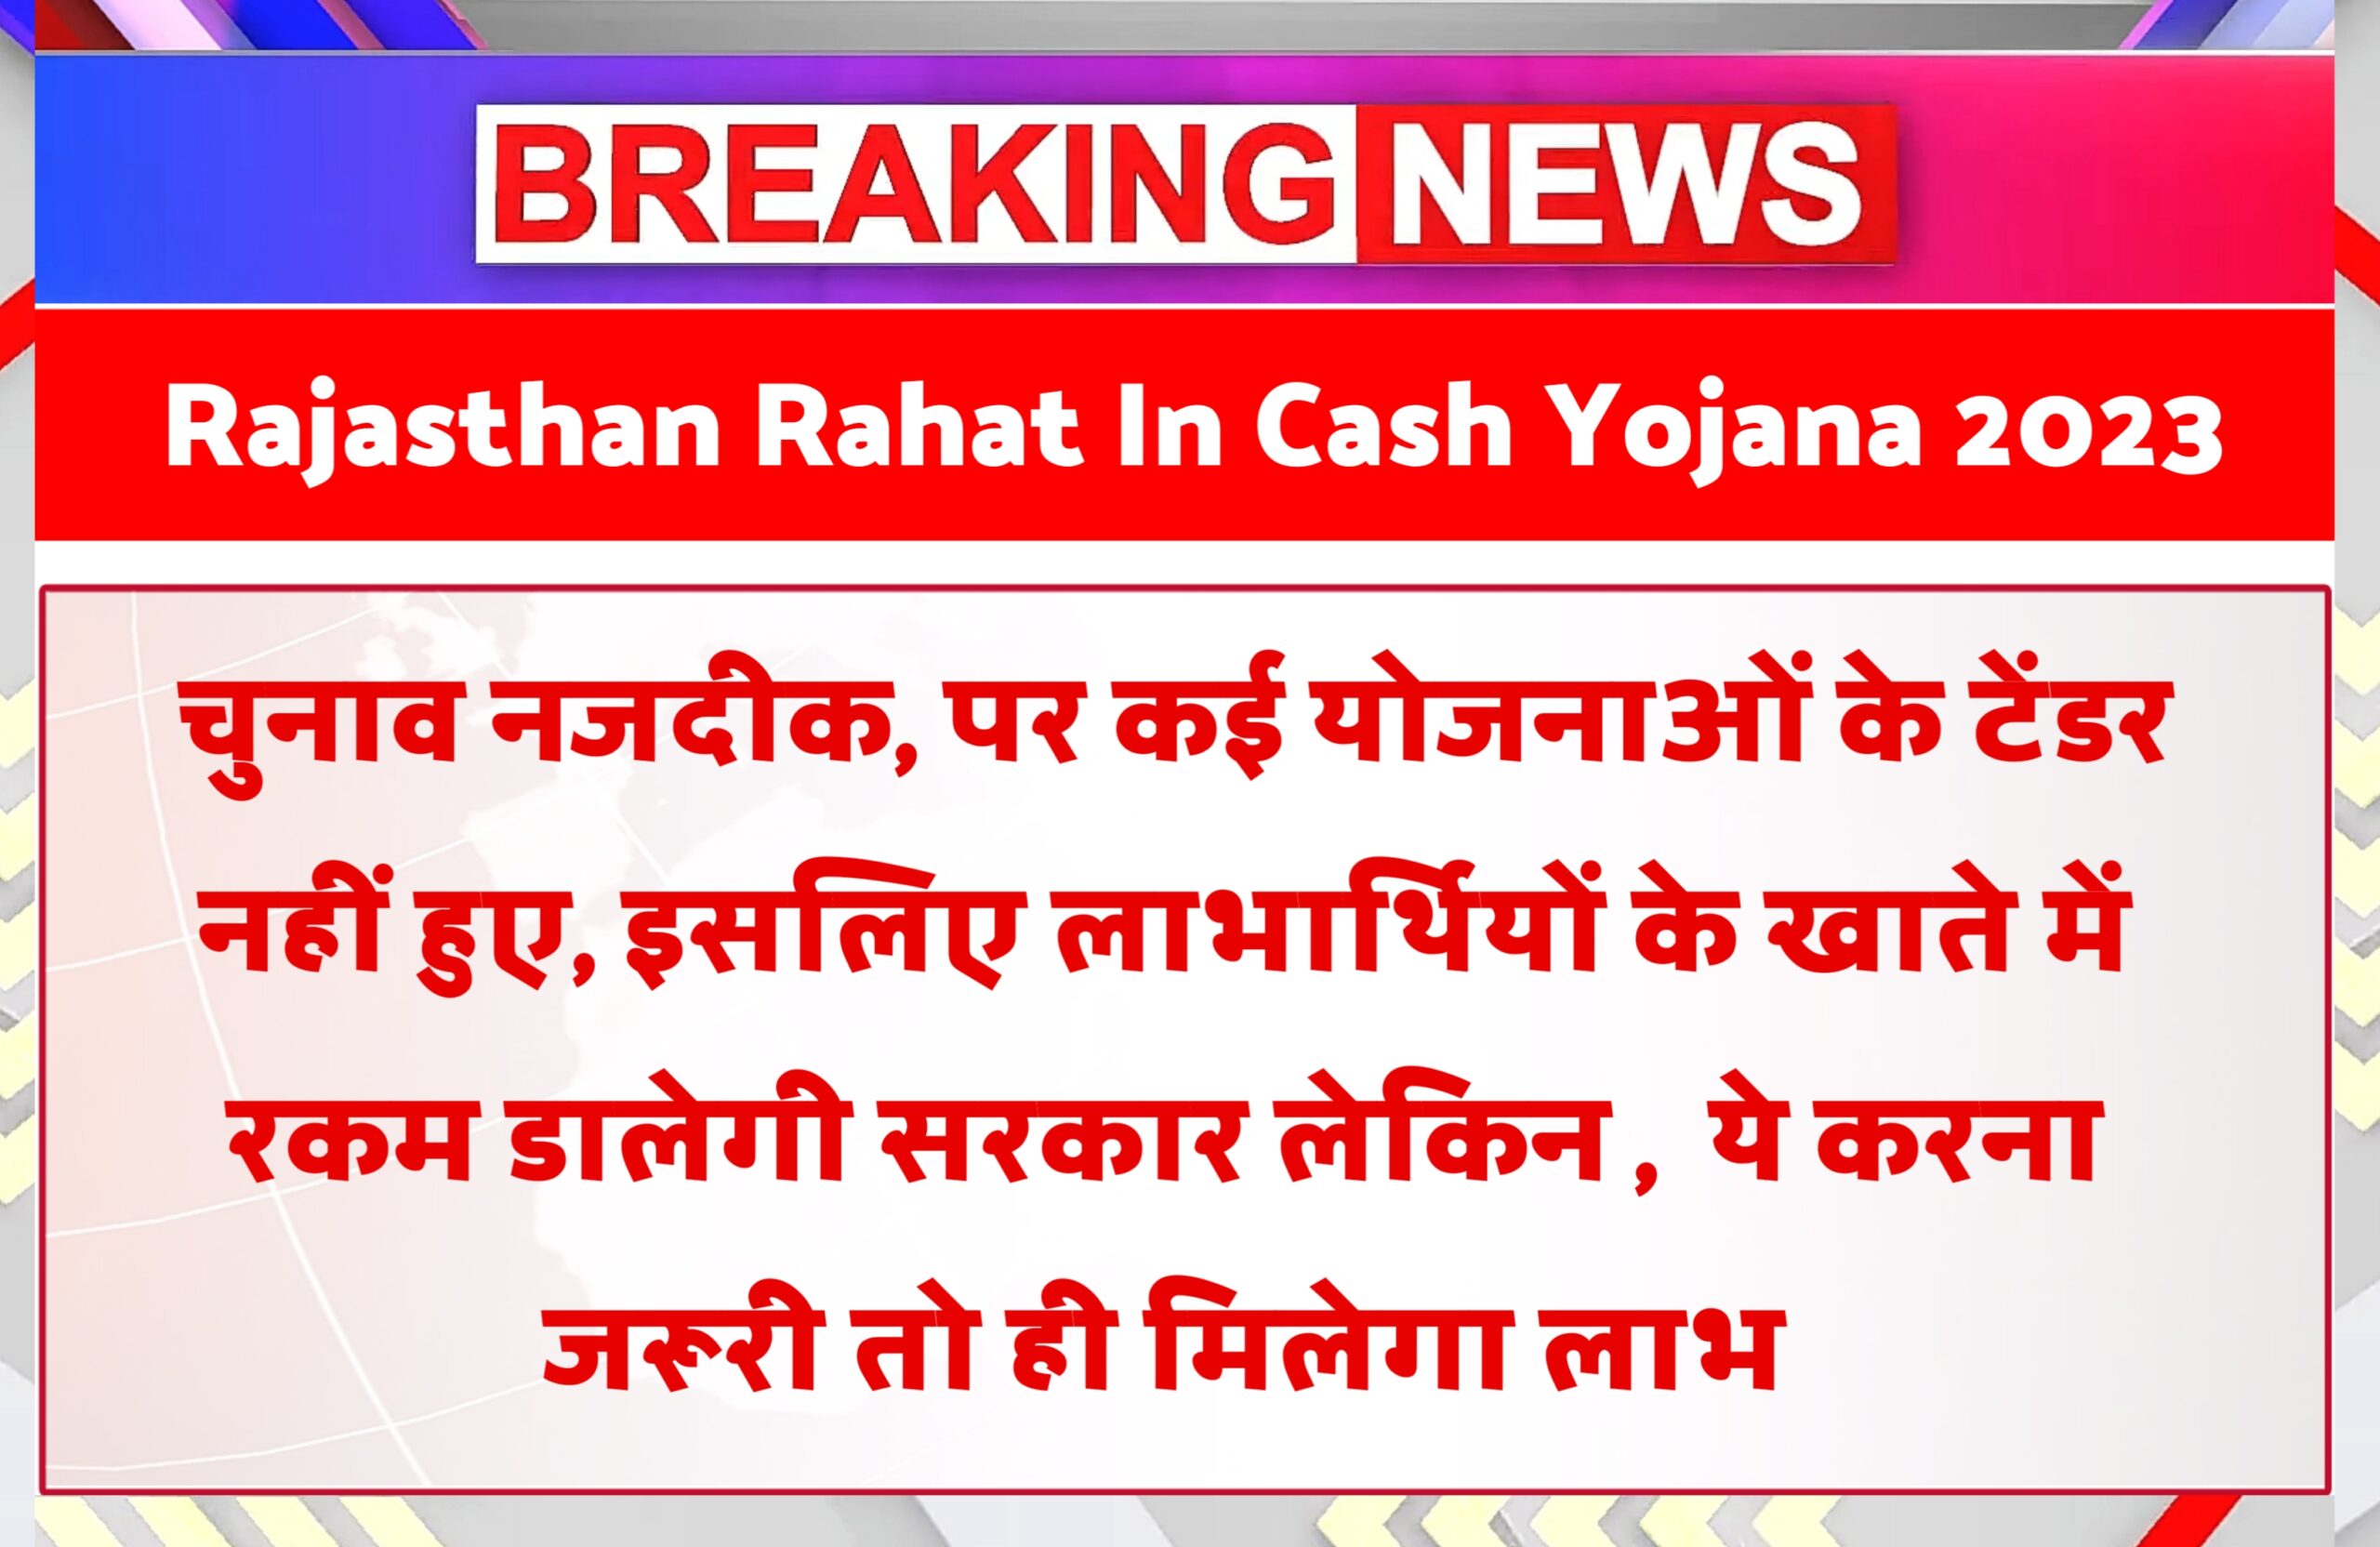 Rajasthan Rahat In Cash Yojana 2023